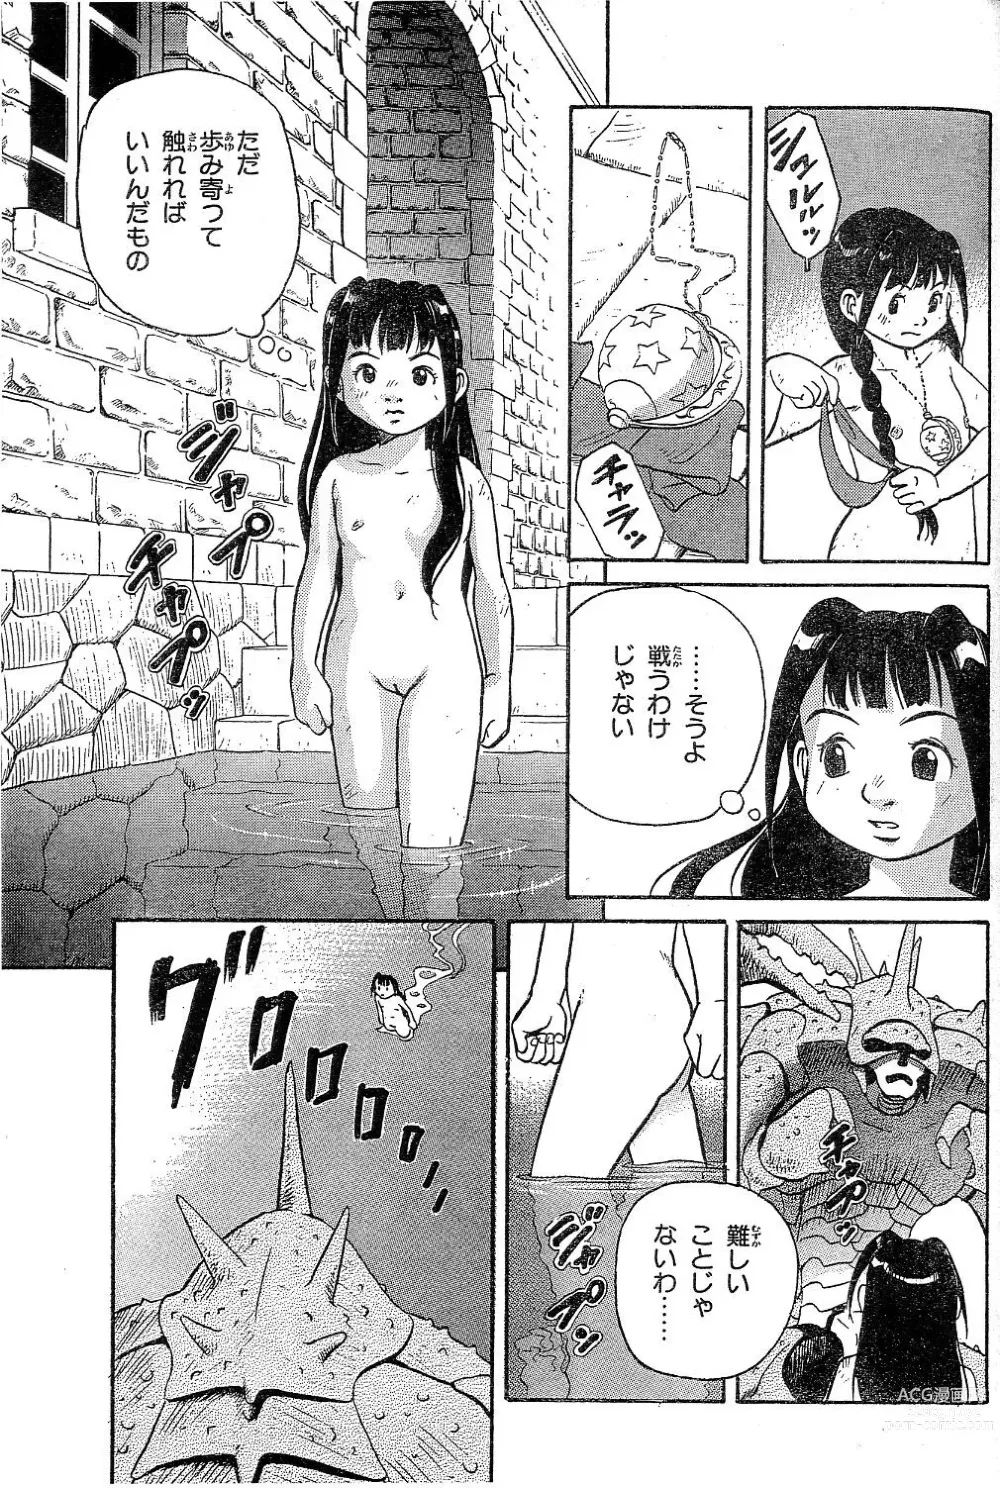 Page 7 of manga Yamaneko-sensei no Monogatari